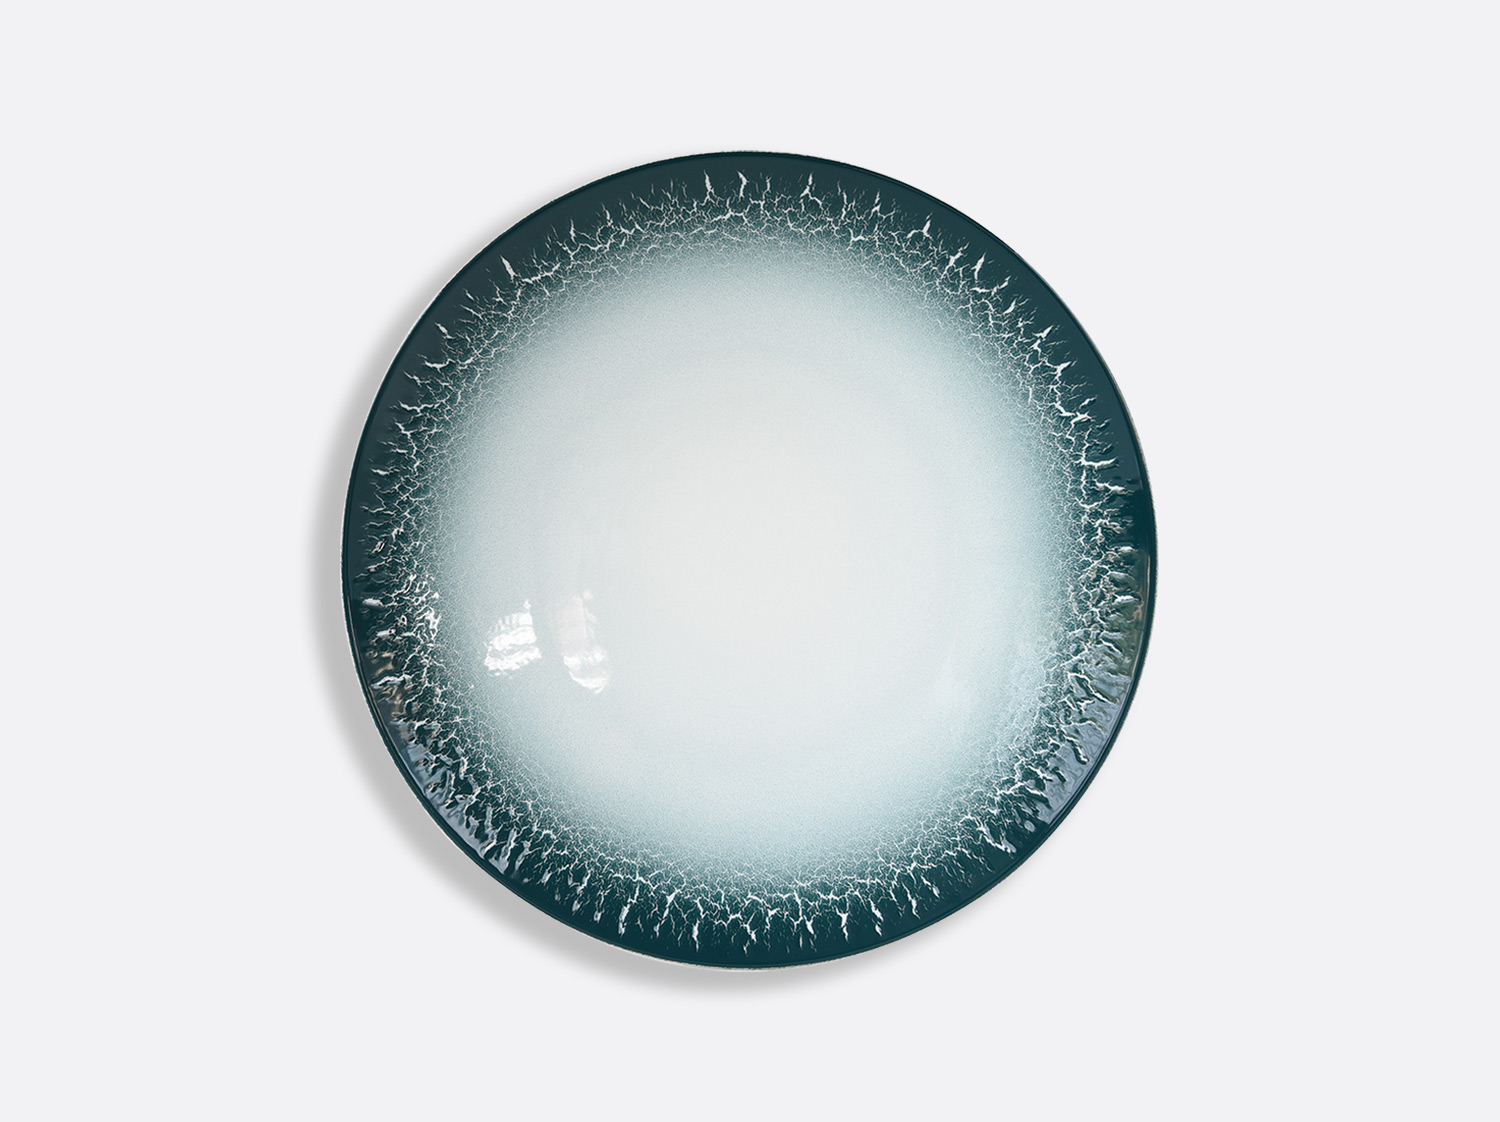 Assiette coupe 23,3 cm en porcelaine de la collection TERRA CALANQUE Bernardaud